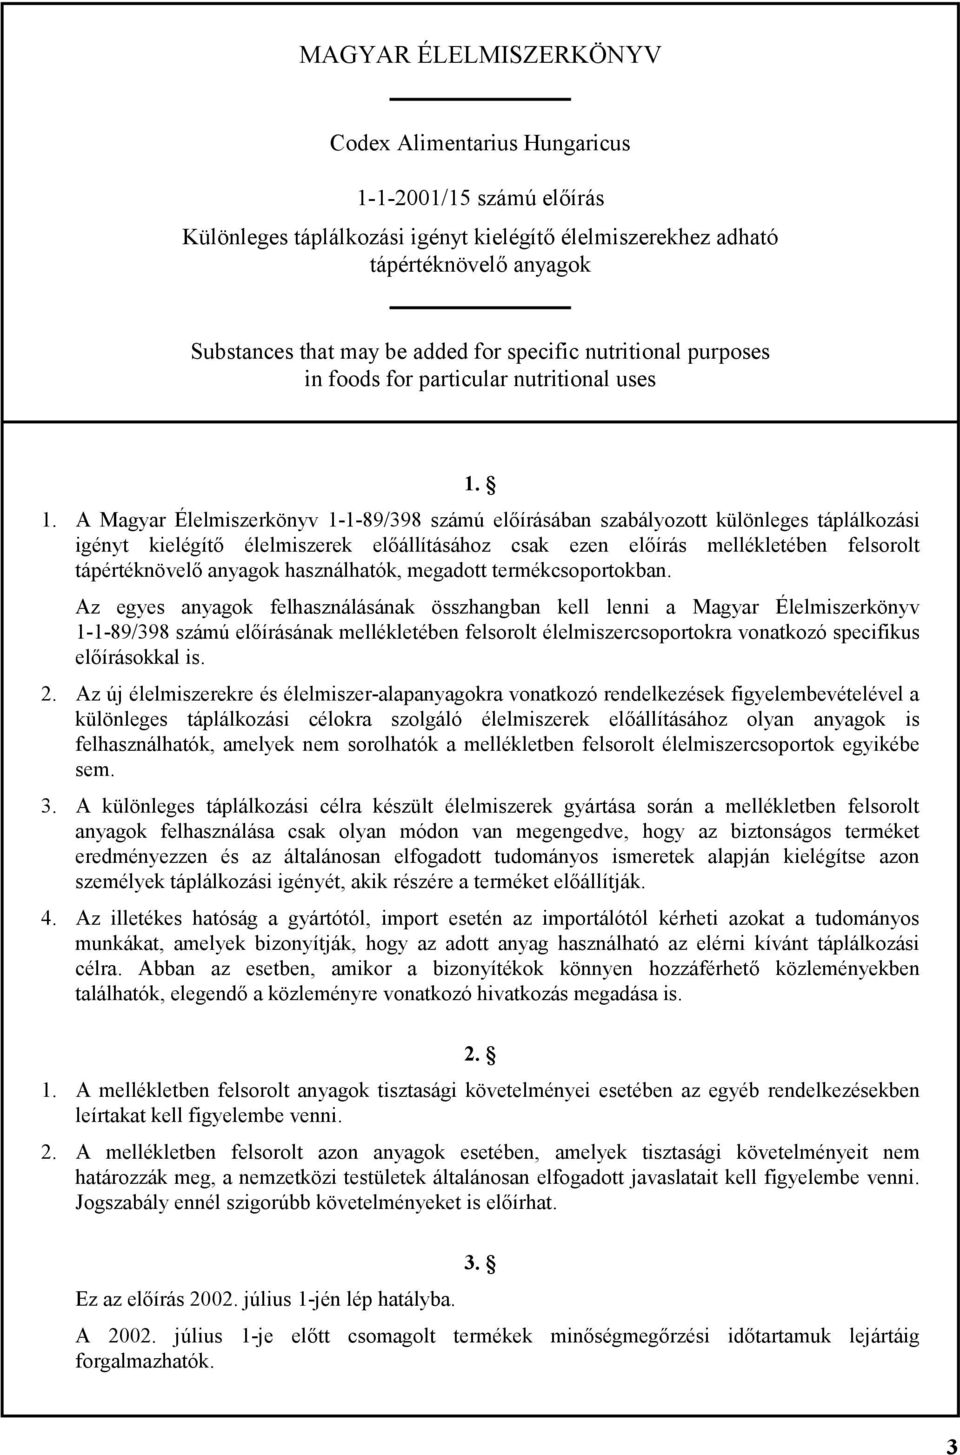 1. A Magyar Élelmiszerkönyv 1-1-89/398 számú előírásában szabályozott különleges táplálkozási igényt kielégítő élelmiszerek előállításához csak ezen előírás mellékletében felsorolt tápértéknövelő